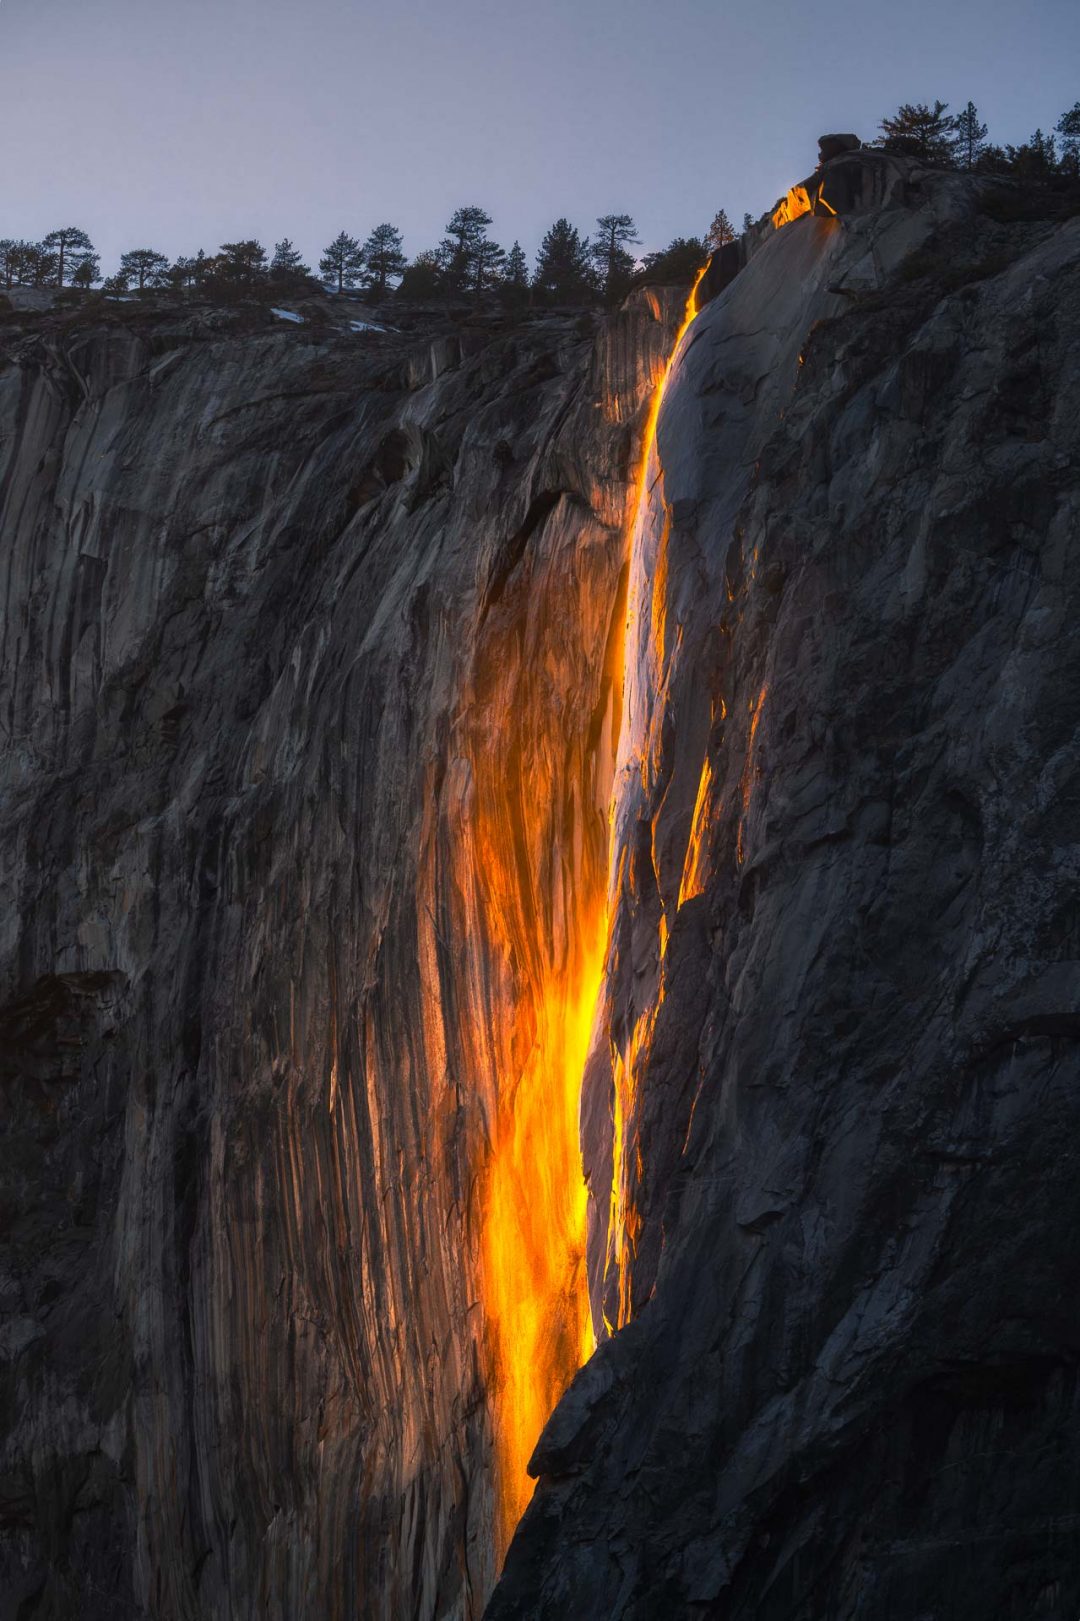 Lo spettacolo di Yosemite: ecco la bellissima cascata di fuoco “Horsetail Fall”